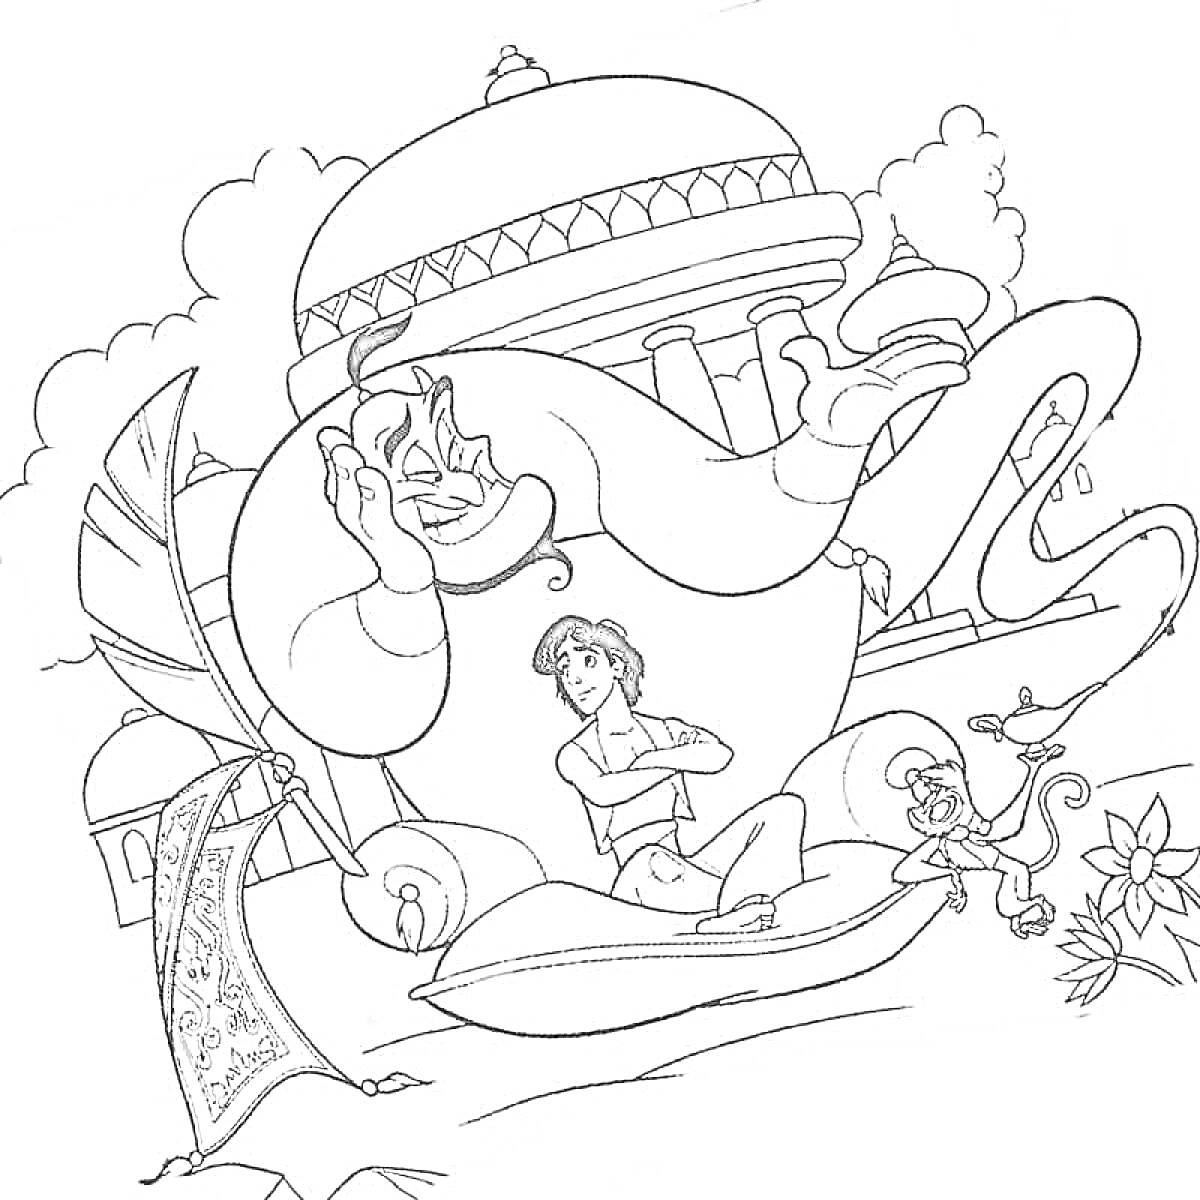 Раскраска Аладдин с Джинном, ковром-самолетом и обезьянкой Абу на фоне дворца